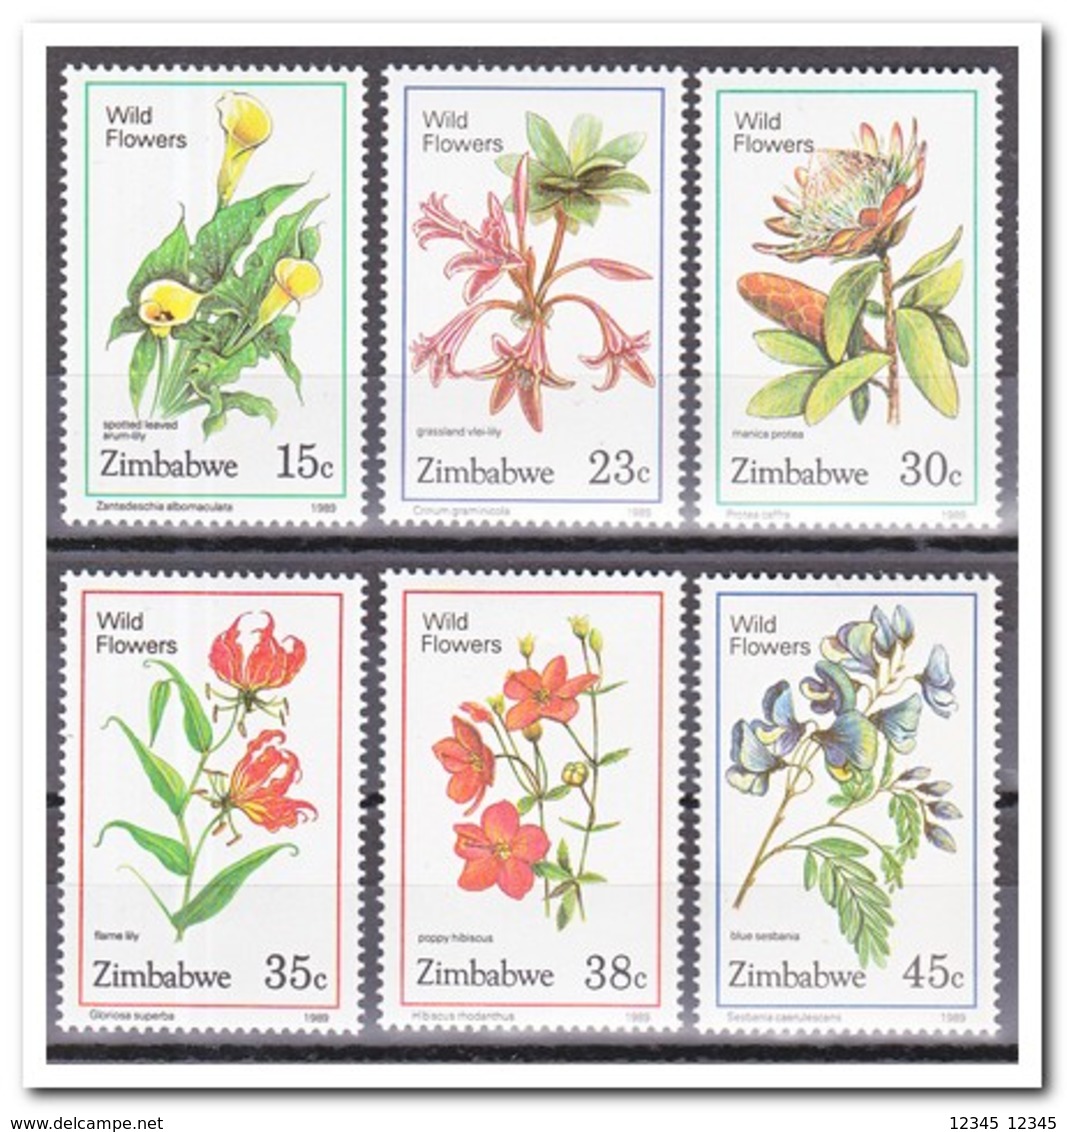 Zimbabwe 1989, Postfris MNH, Flowers - Zimbabwe (1980-...)